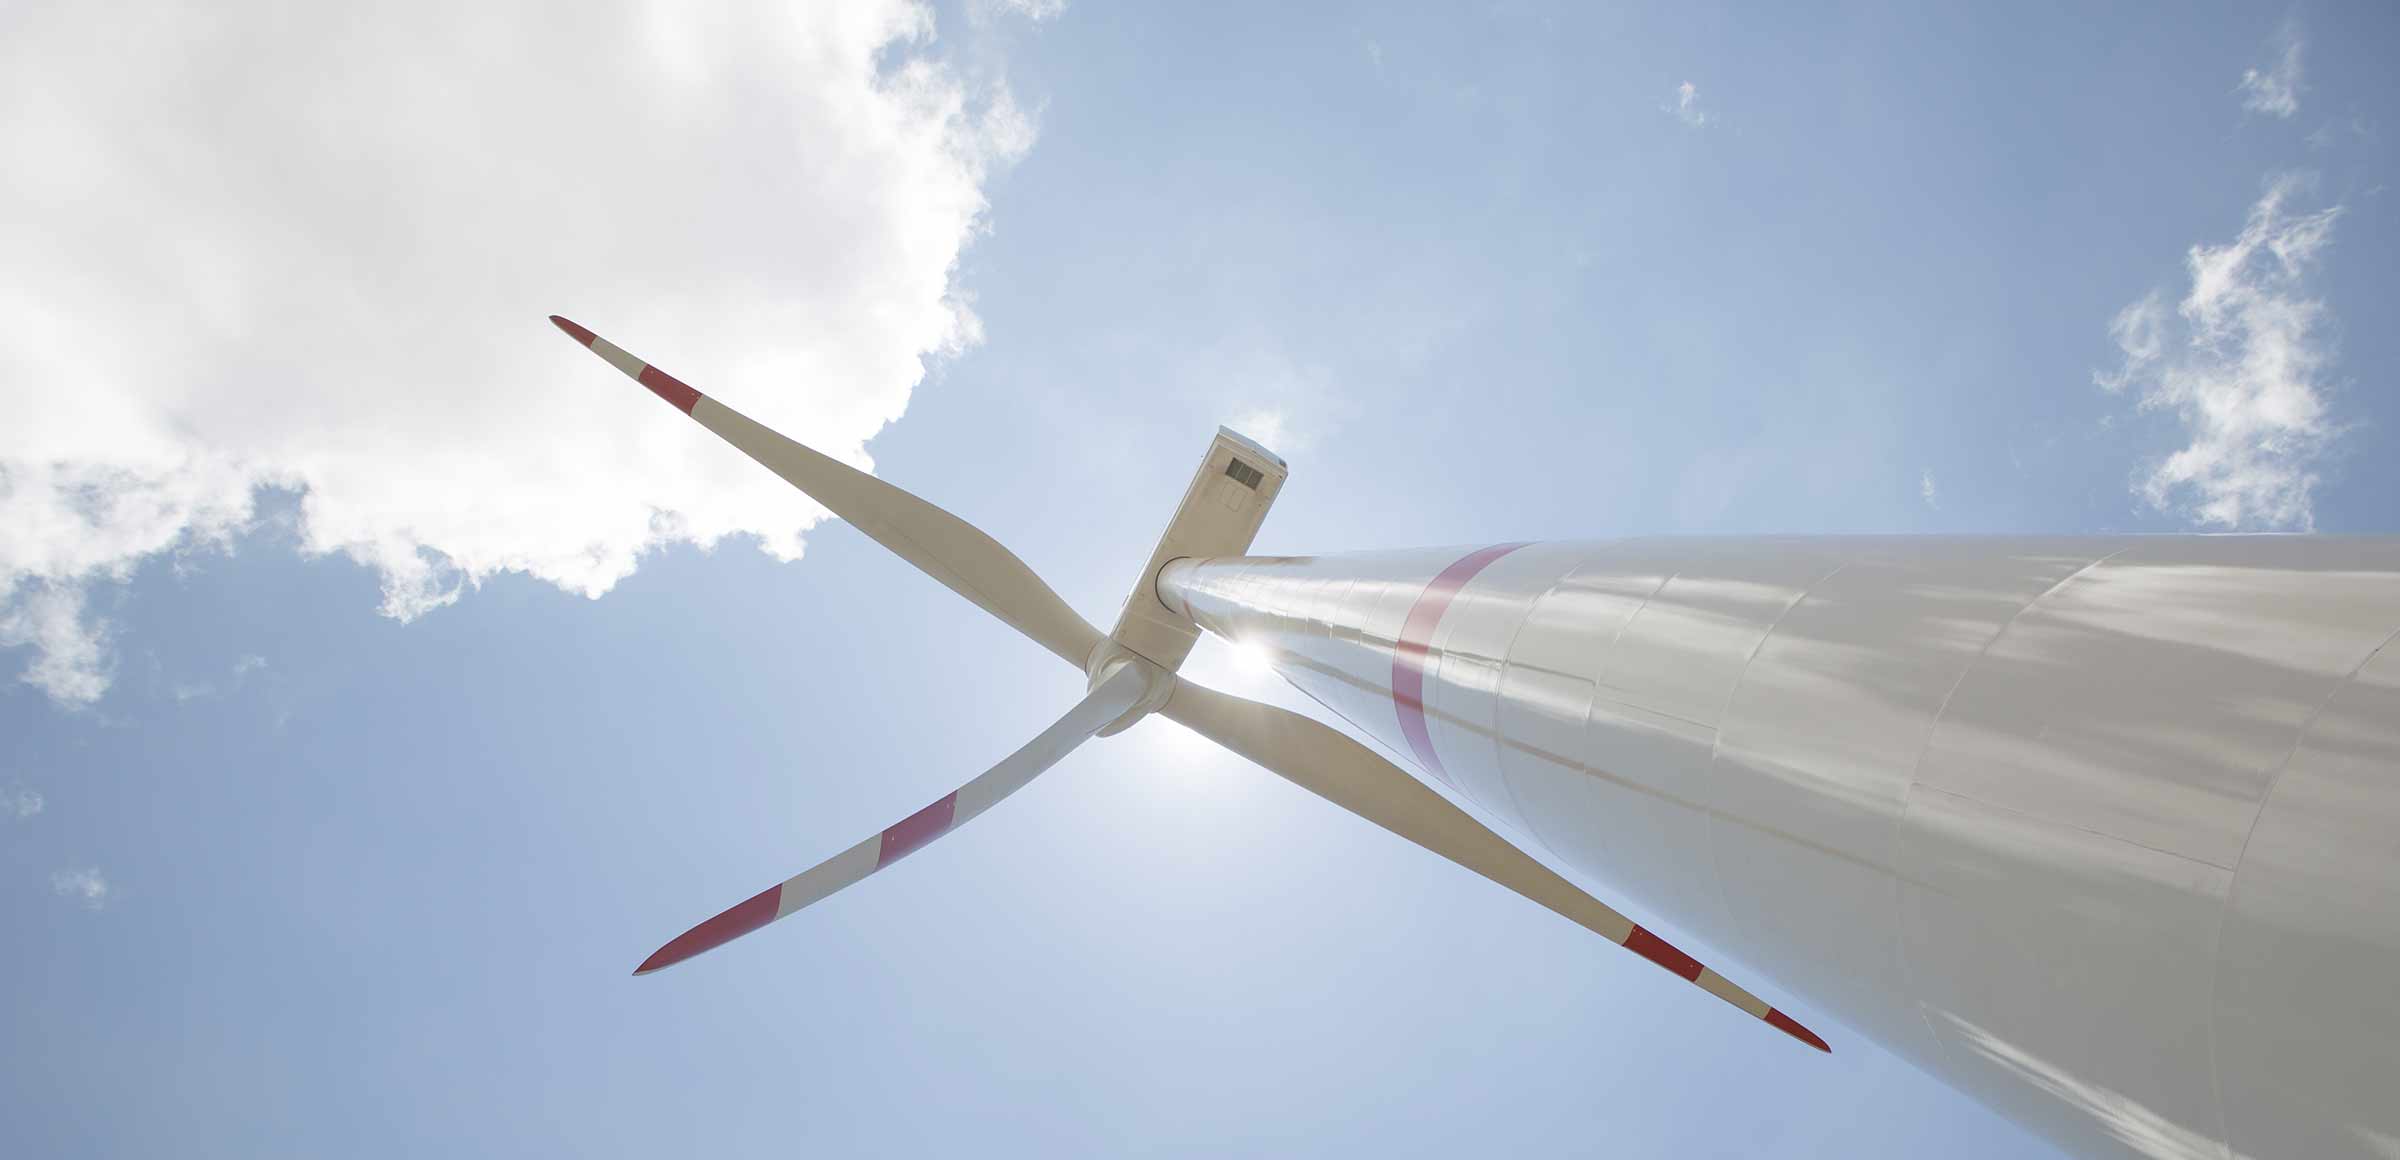 Instalação de novo gerador eólico manutenção da turbina do moinho de vento  canteiro de obras com guindastes para montagem da torre do moinho de vento  energia eólica e energia renovável